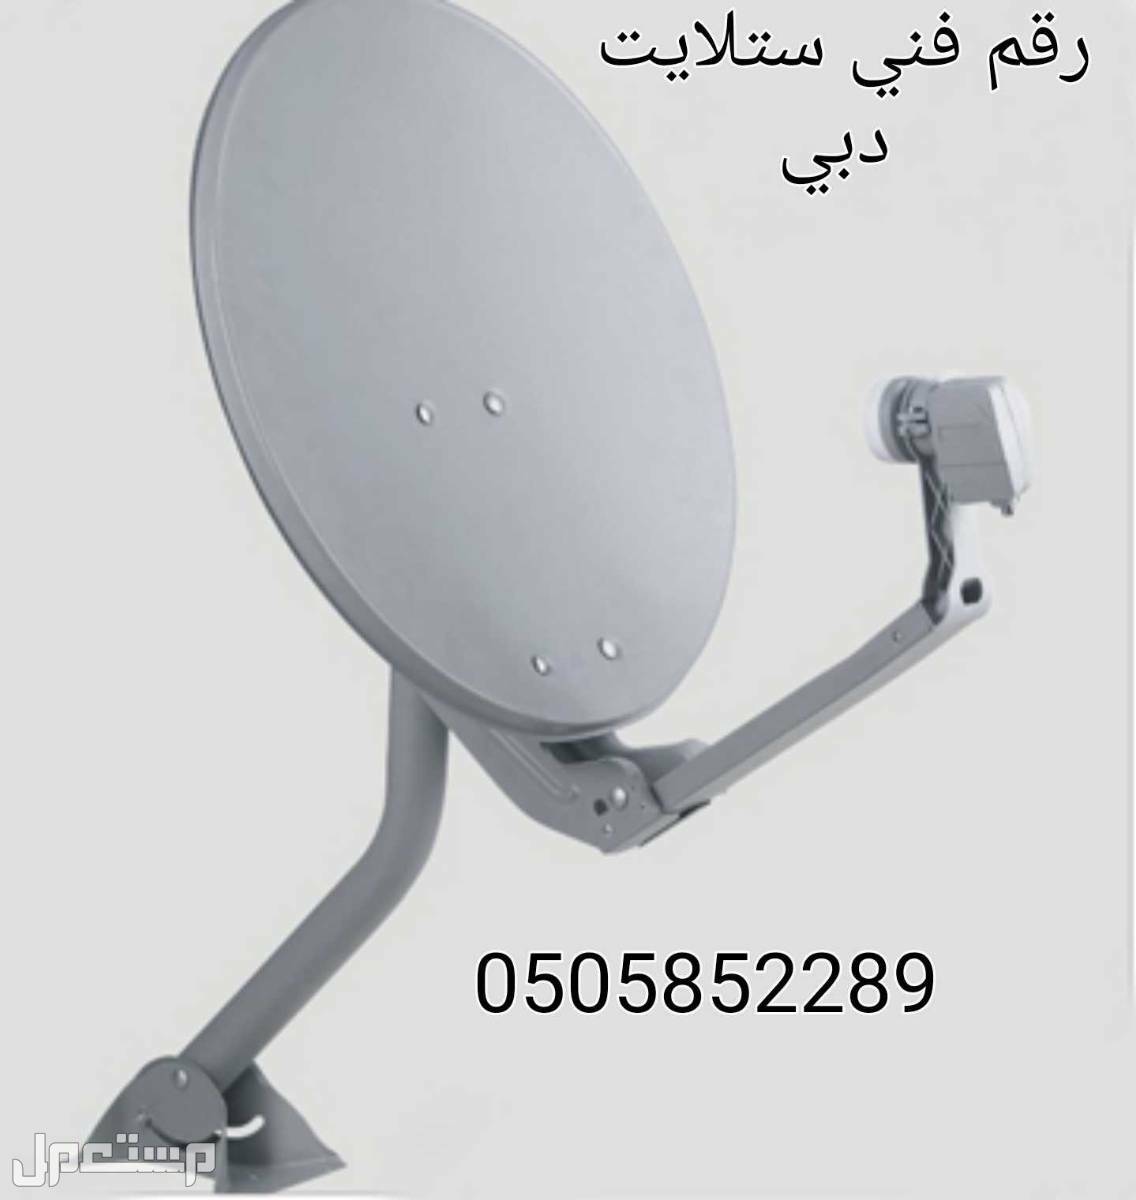 فني ستلايت دبي  جميع المناطق في دبي برمجة تلفزيونات ،تصليح دشات  في دبي بسعر 100 درهم إماراتي